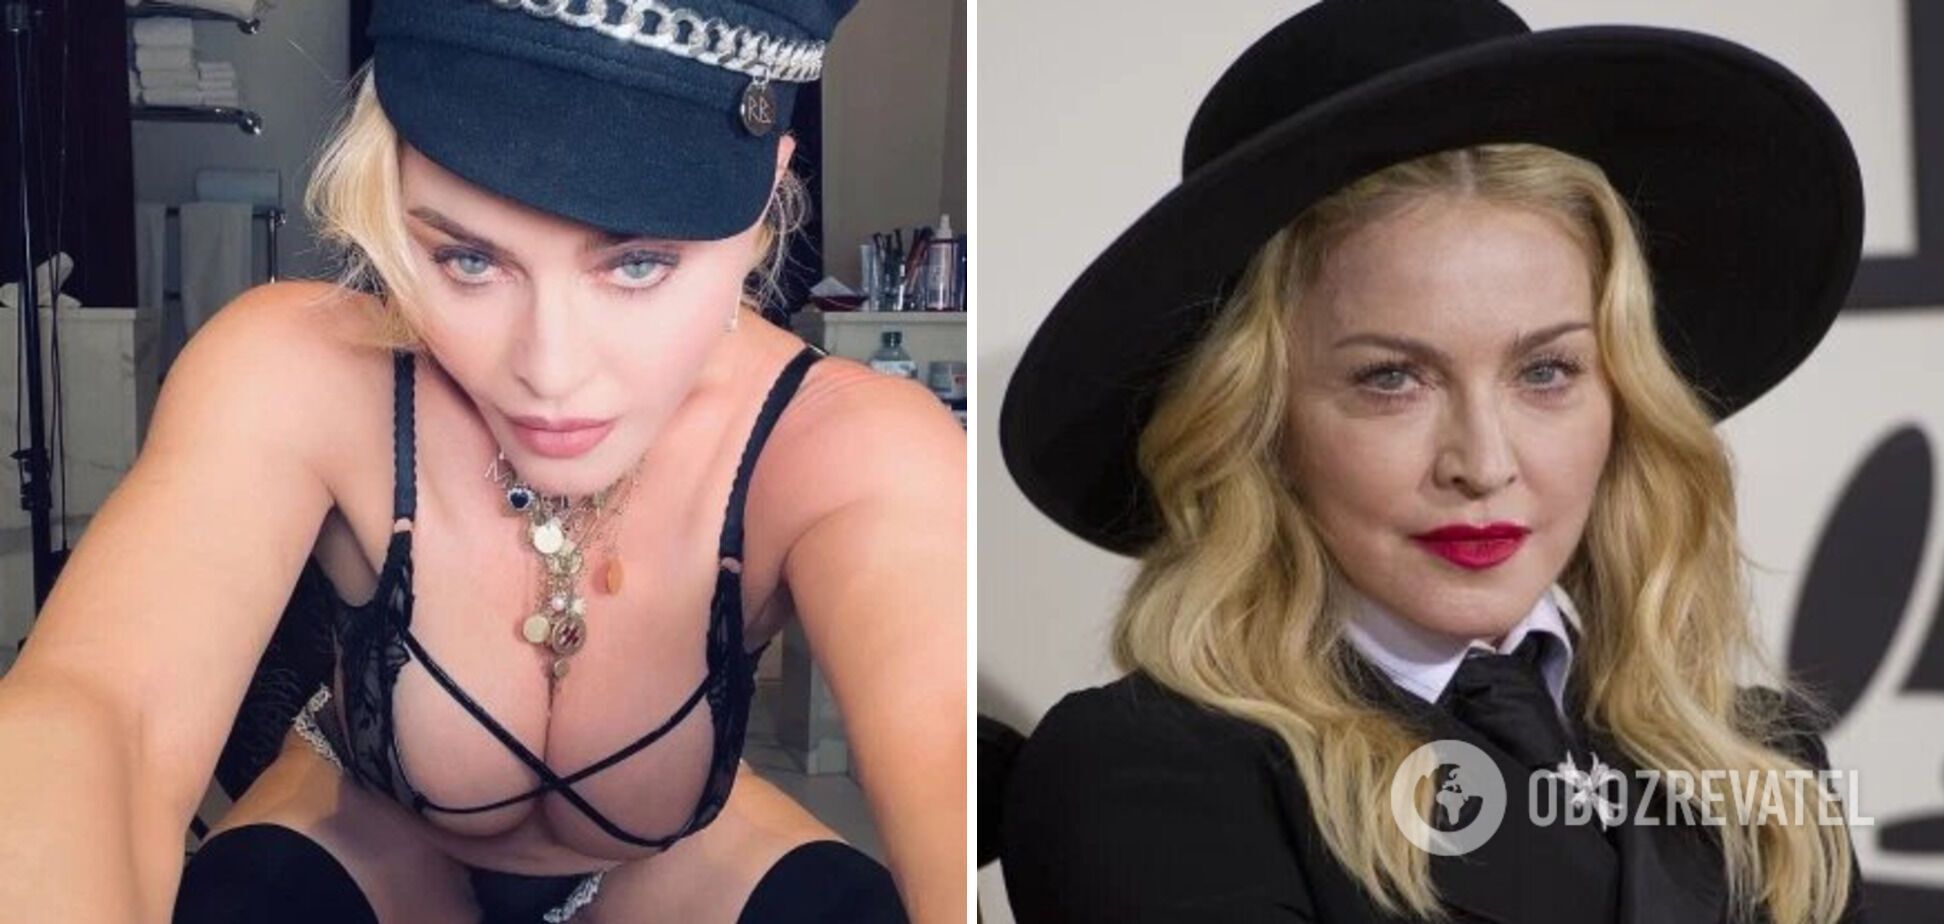 В соцсетях Мадонна иногда предстает в очень откровенных образах